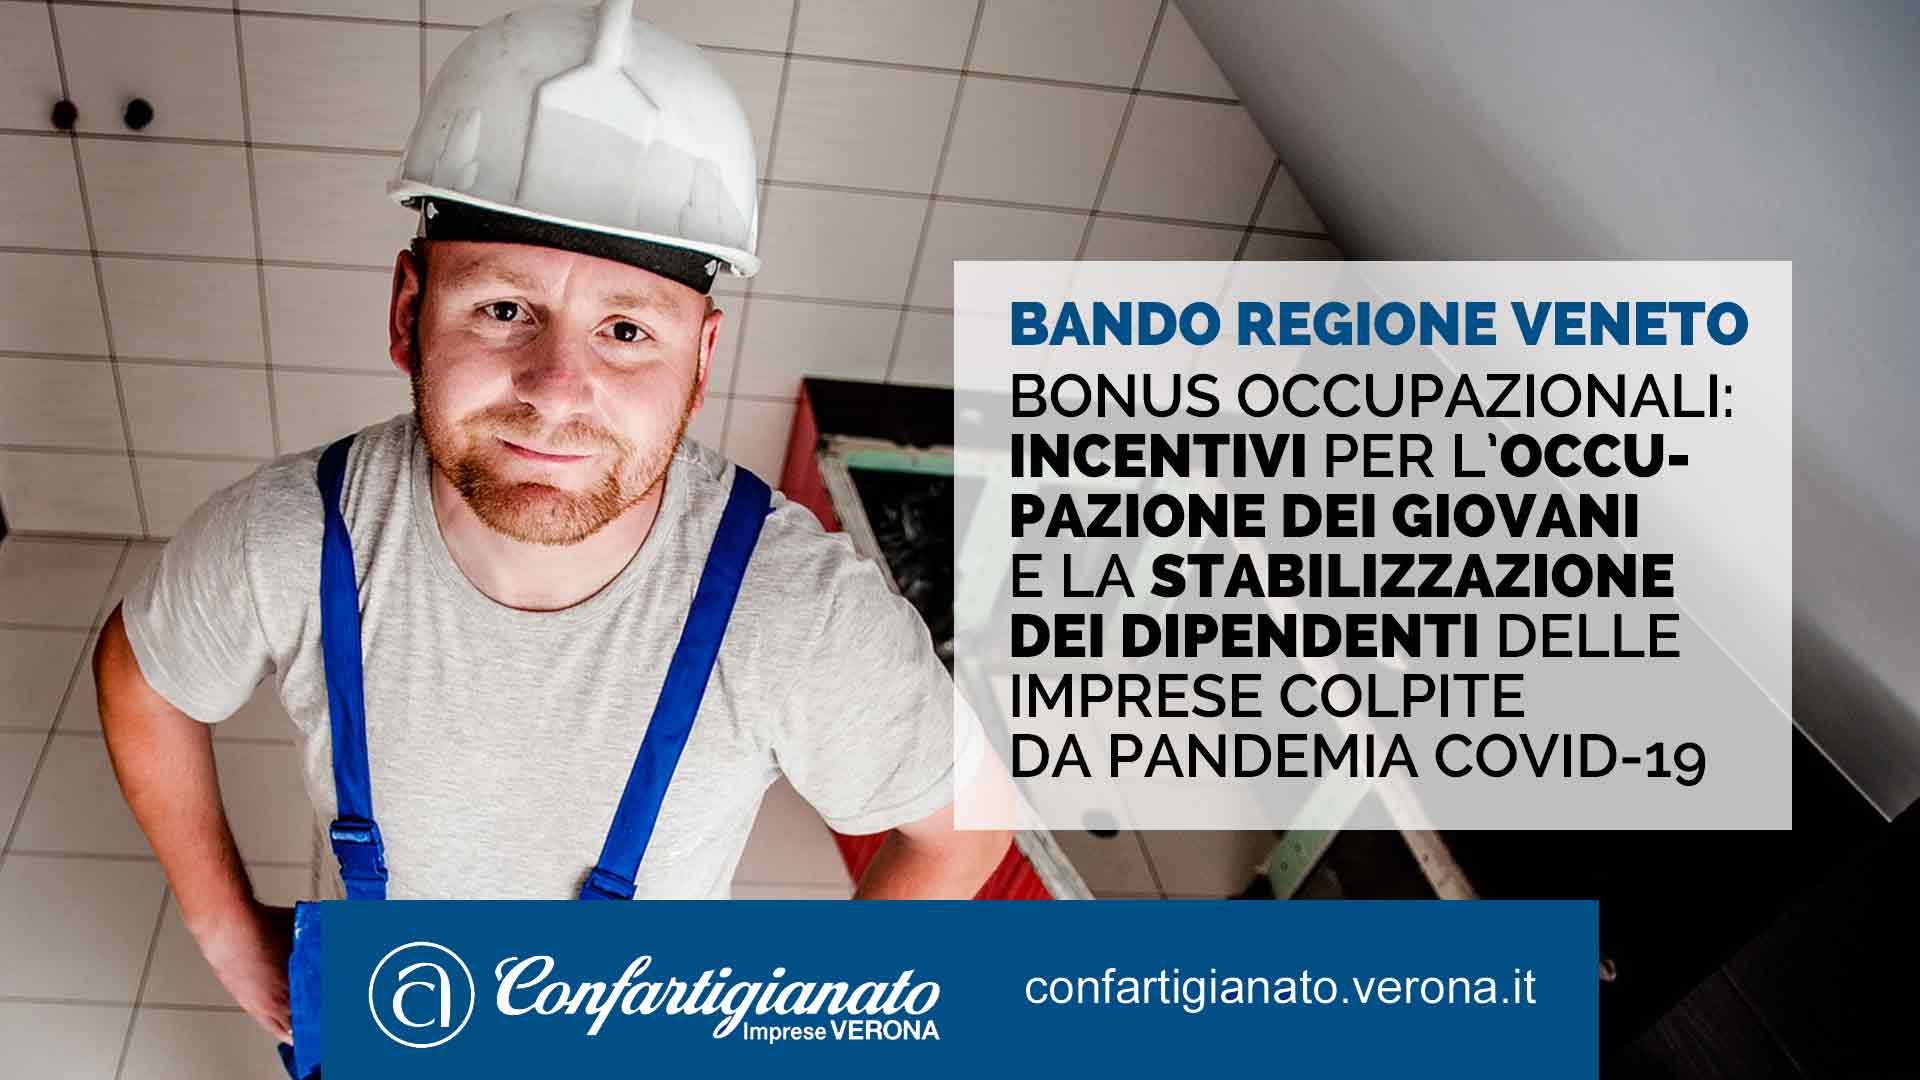 Bonus occupazionali: incentivi per occupazione giovani e stabilizzazione dipendenti delle imprese colpite da pandemia Covid-19